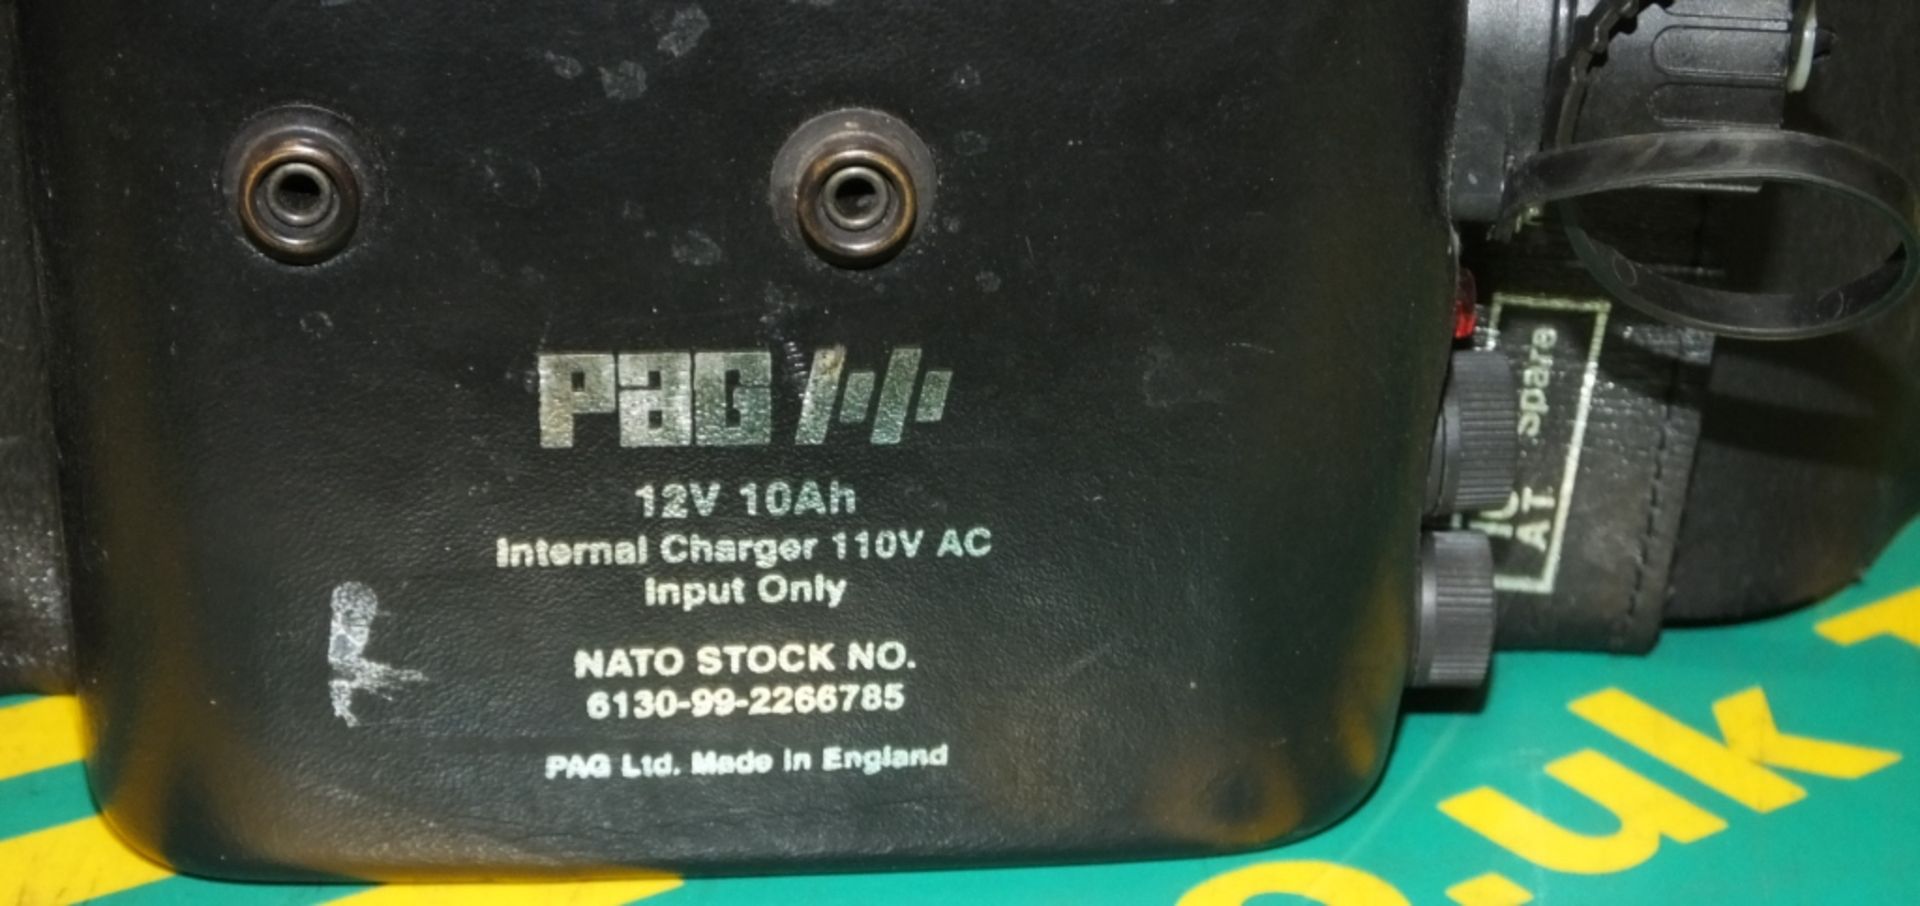 PAG Battery belt - 12V - 10Ah - Internal Charger 110V Input only - Image 3 of 3